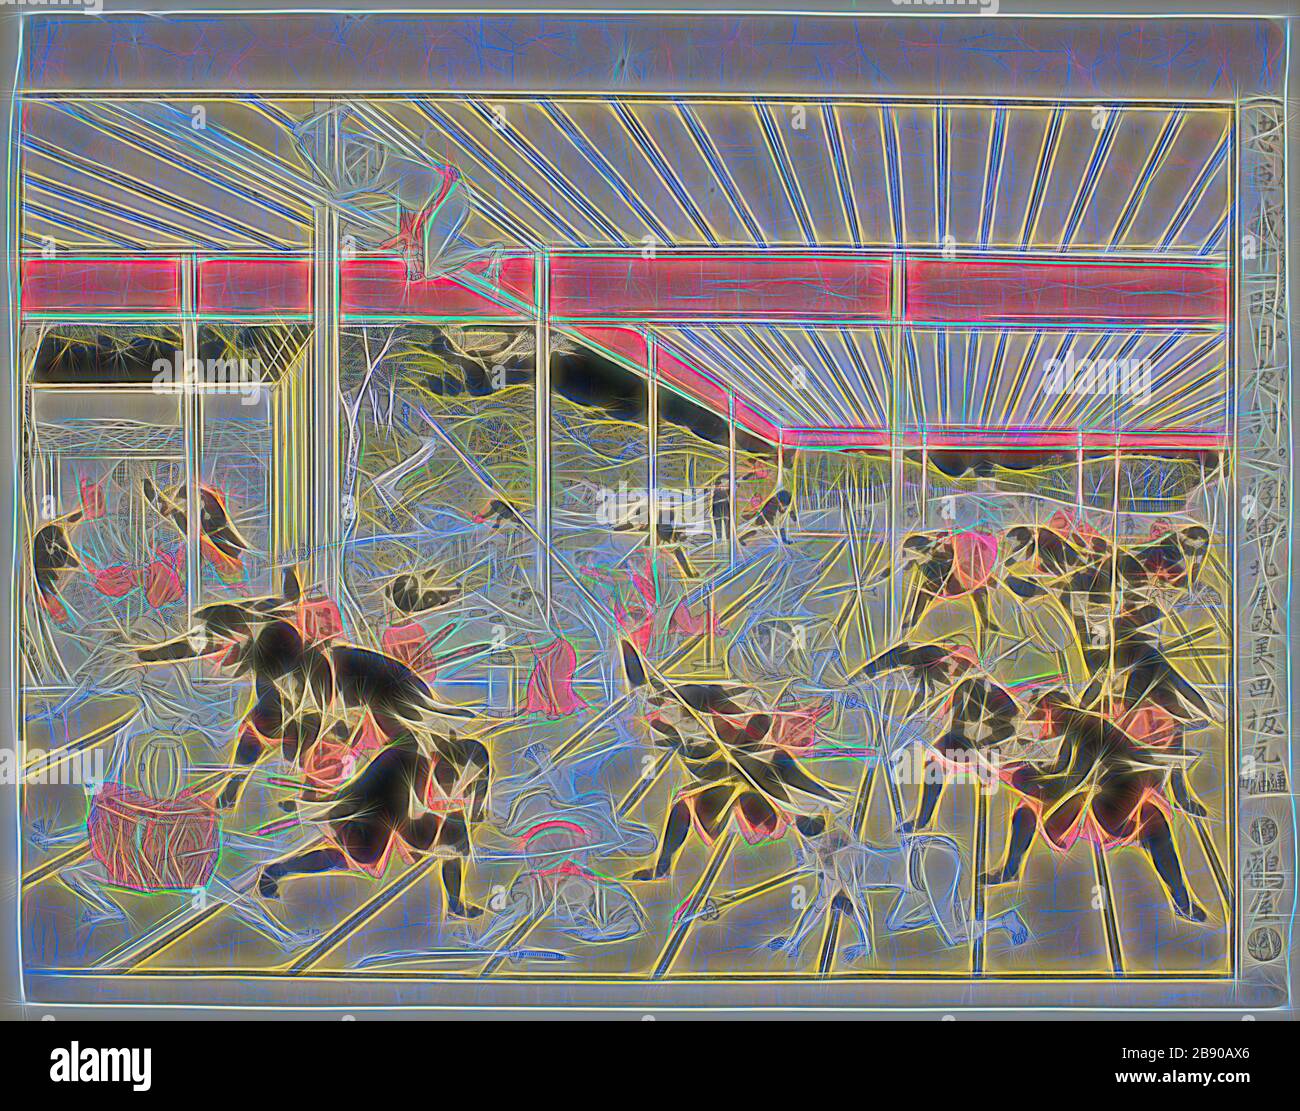 Vue d'ensemble de l'attaque nocturne de la Loi XI de la Storehouse des fidèles retardateurs (Chusingura juichidanme youchi no uki-e), c. 1791/94, Kitao Masayoshi (Kuwagata Keisai), japonais, 1764–1824, Japon, imprimé color woodblock, horizontal o-oban, 33,4 x 43,8 cm, repensé par Gibon, design de glanissement chaleureux et gai de luminosité et de rayons de lumière radiance. L'art classique réinventé avec une touche moderne. La photographie inspirée du futurisme, qui embrasse l'énergie dynamique de la technologie moderne, du mouvement, de la vitesse et révolutionne la culture. Banque D'Images